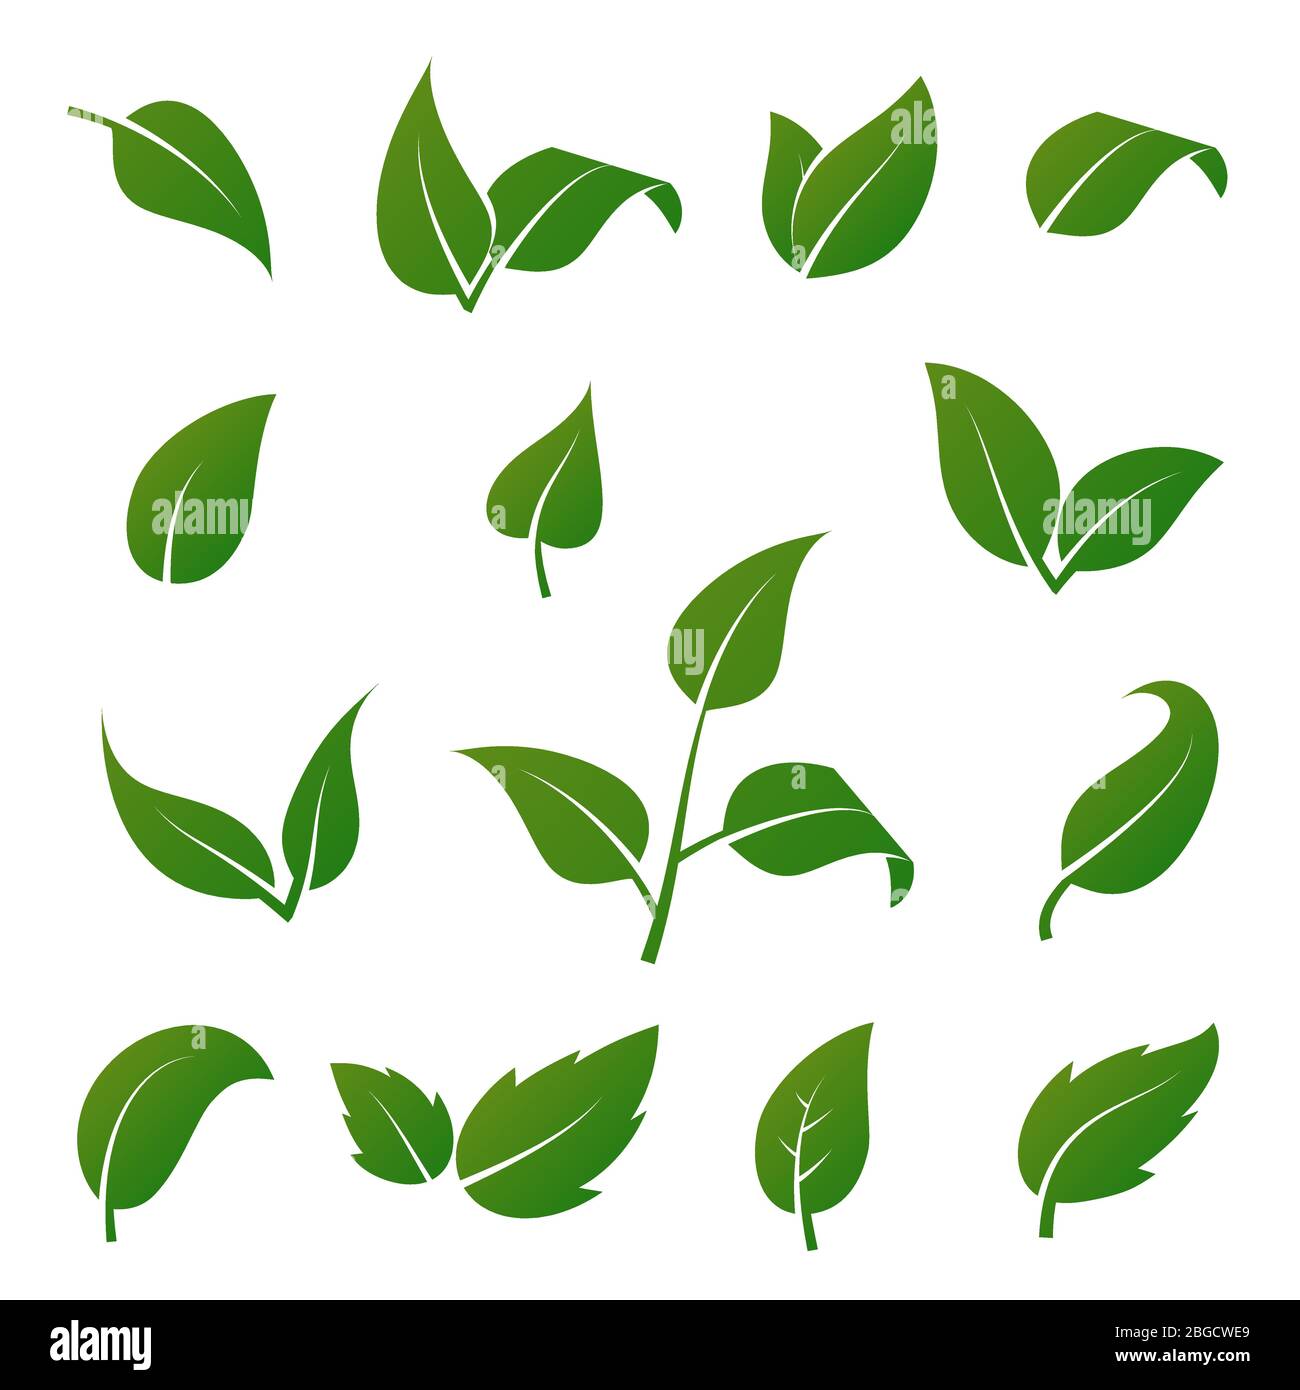 Grüner Baum und Pflanze Blätter Vektor-Symbole isoliert auf weißem Hintergrund. Eco-Symbole gesetzt. Pflanze grünes Blatt, organische natürliche florale Illustration Stock Vektor